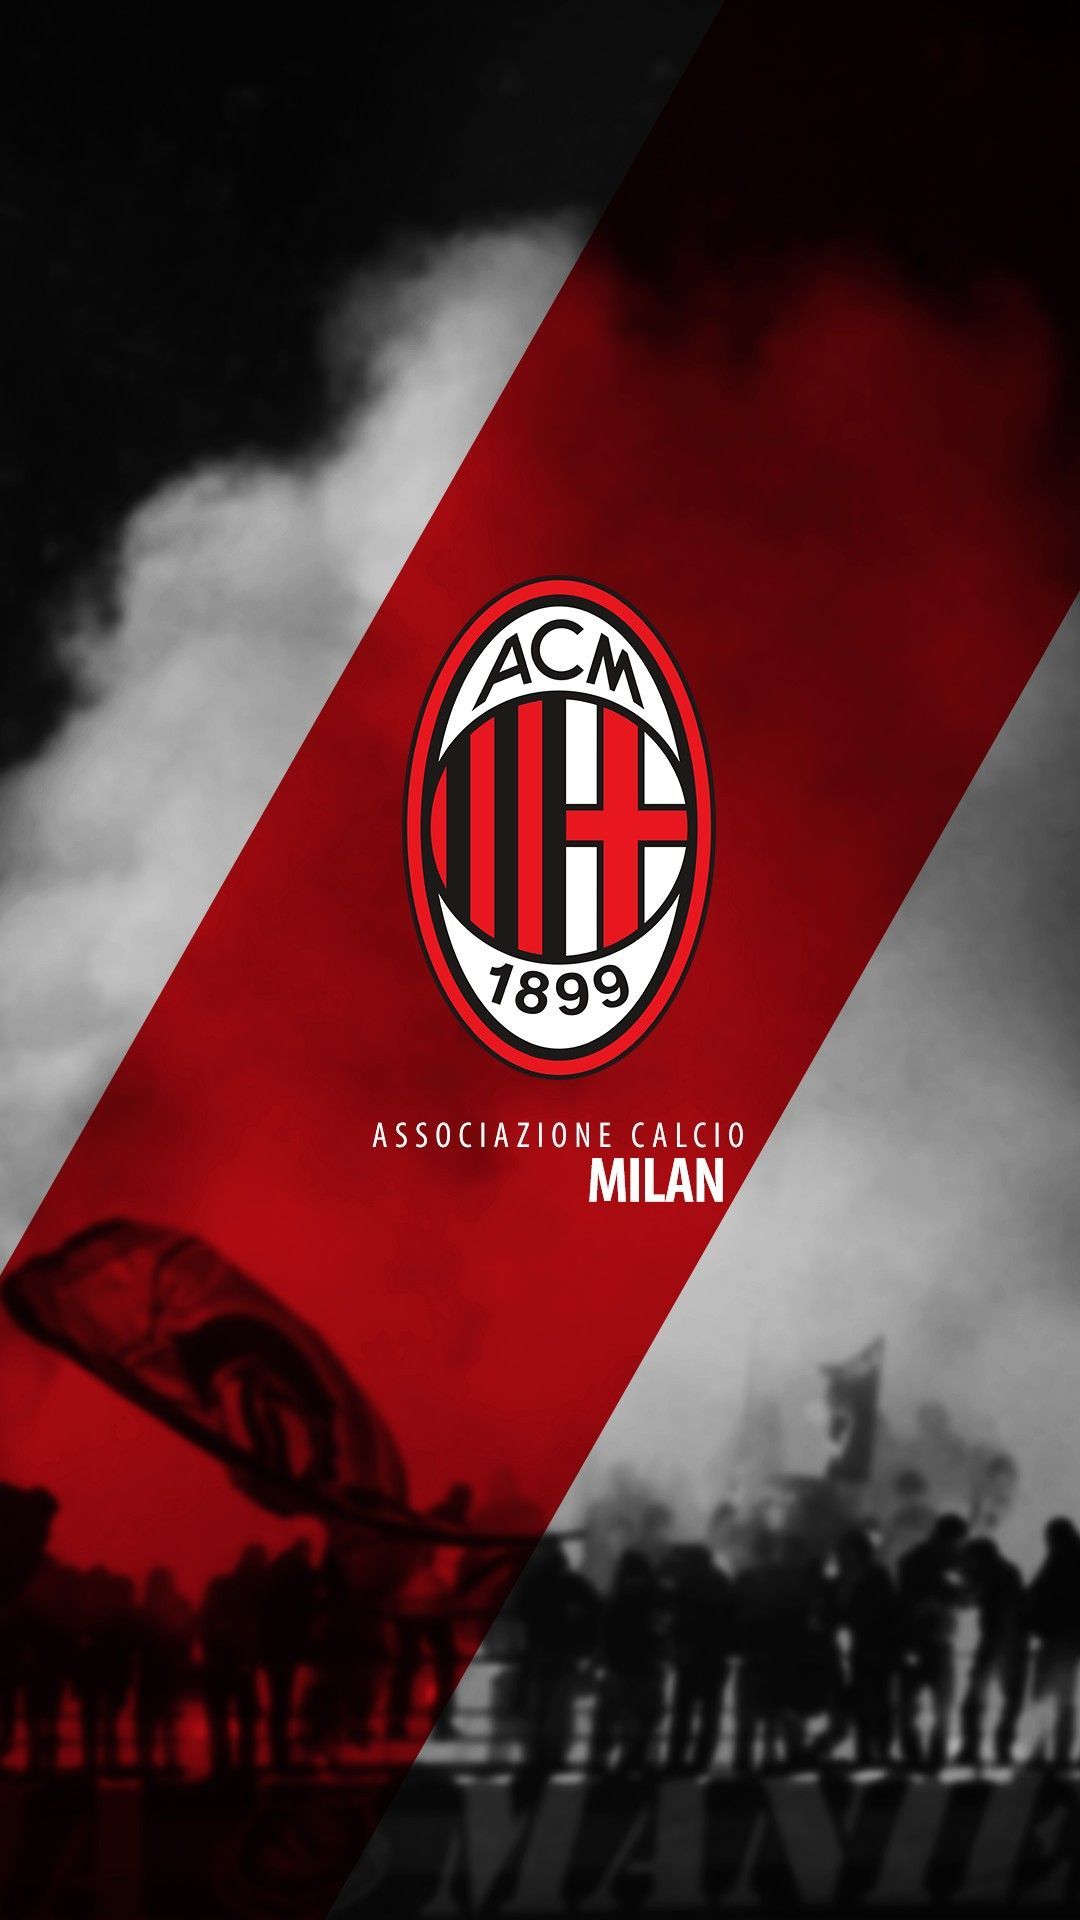 Associazione Calcio Milan. Ac milan, Milan wallpaper, Inter milan